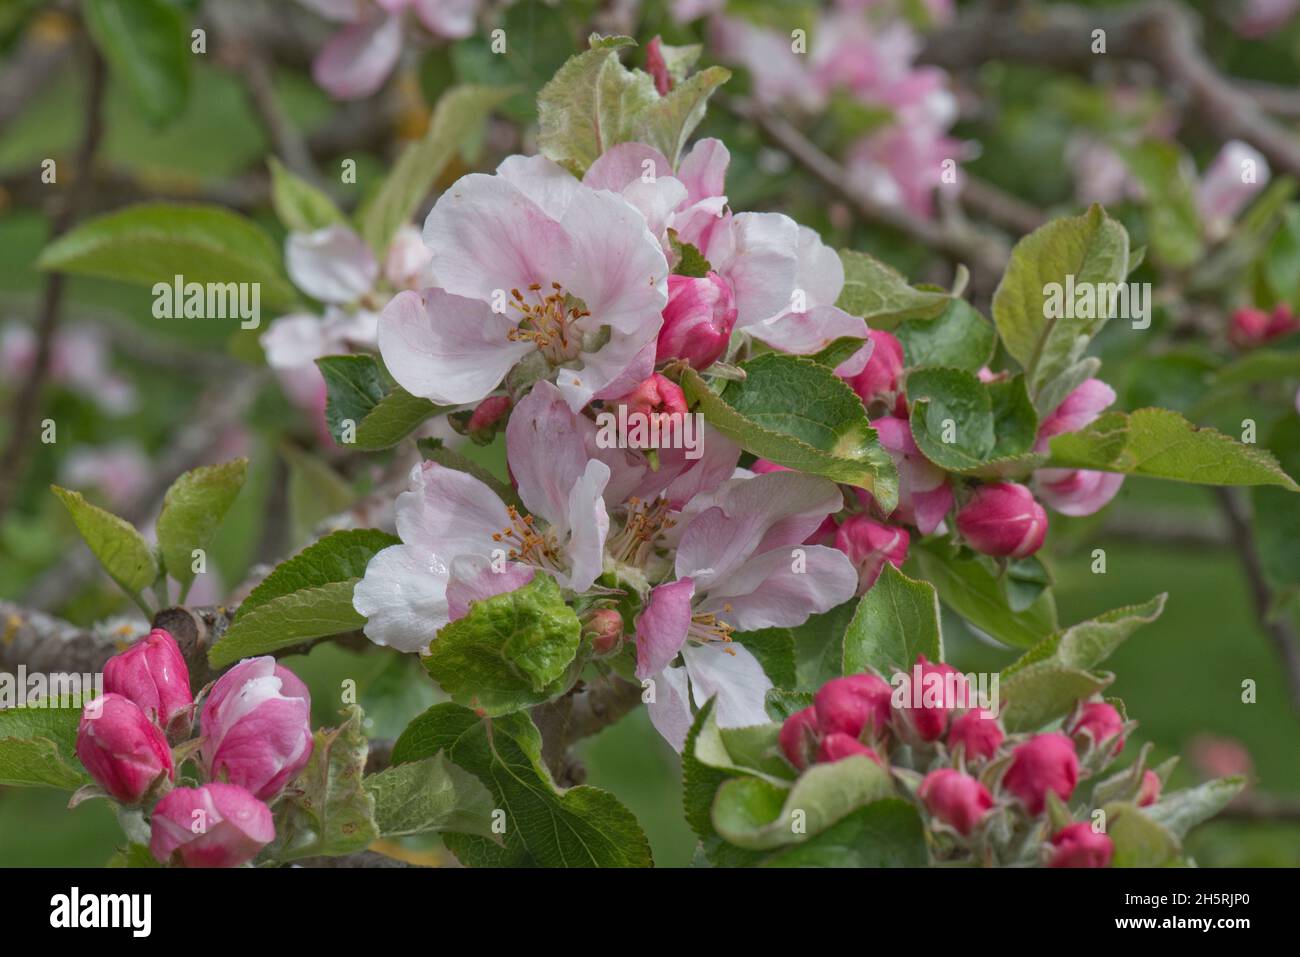 Fleurs de roi roses et ouverture de boutons de fleur rouge profond sur une variété de branche de pomme Braeburn au printemps, cette variété est cultivée pour manger, Berkshire, mai Banque D'Images